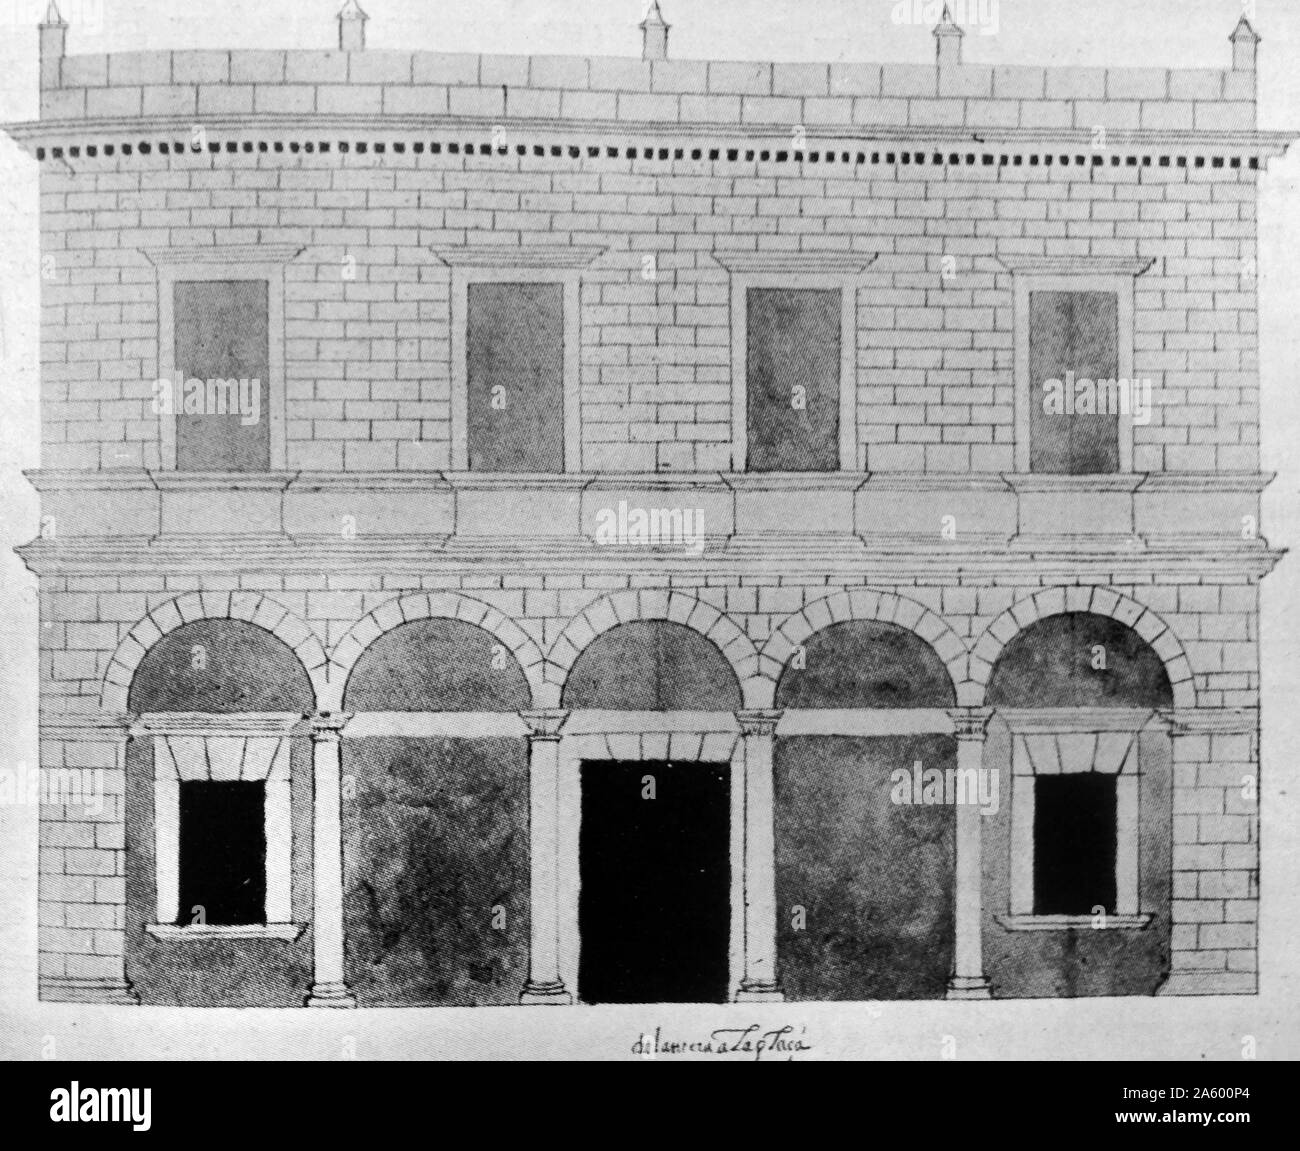 Abbildung zeigt das äußere des Gebäudes Zoll Cartagena de Indias. Datiert aus dem 16. Jahrhundert Stockfoto